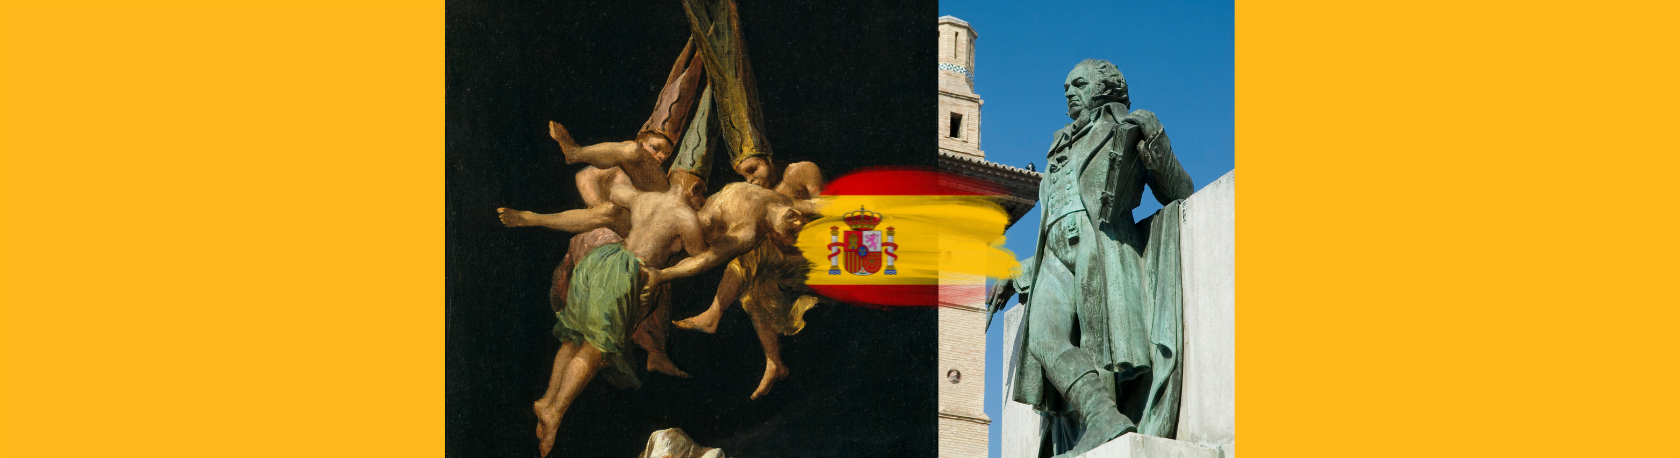 ¿Sabías que el famoso pintor Francisco Goya quedó sordo a los 47 años?